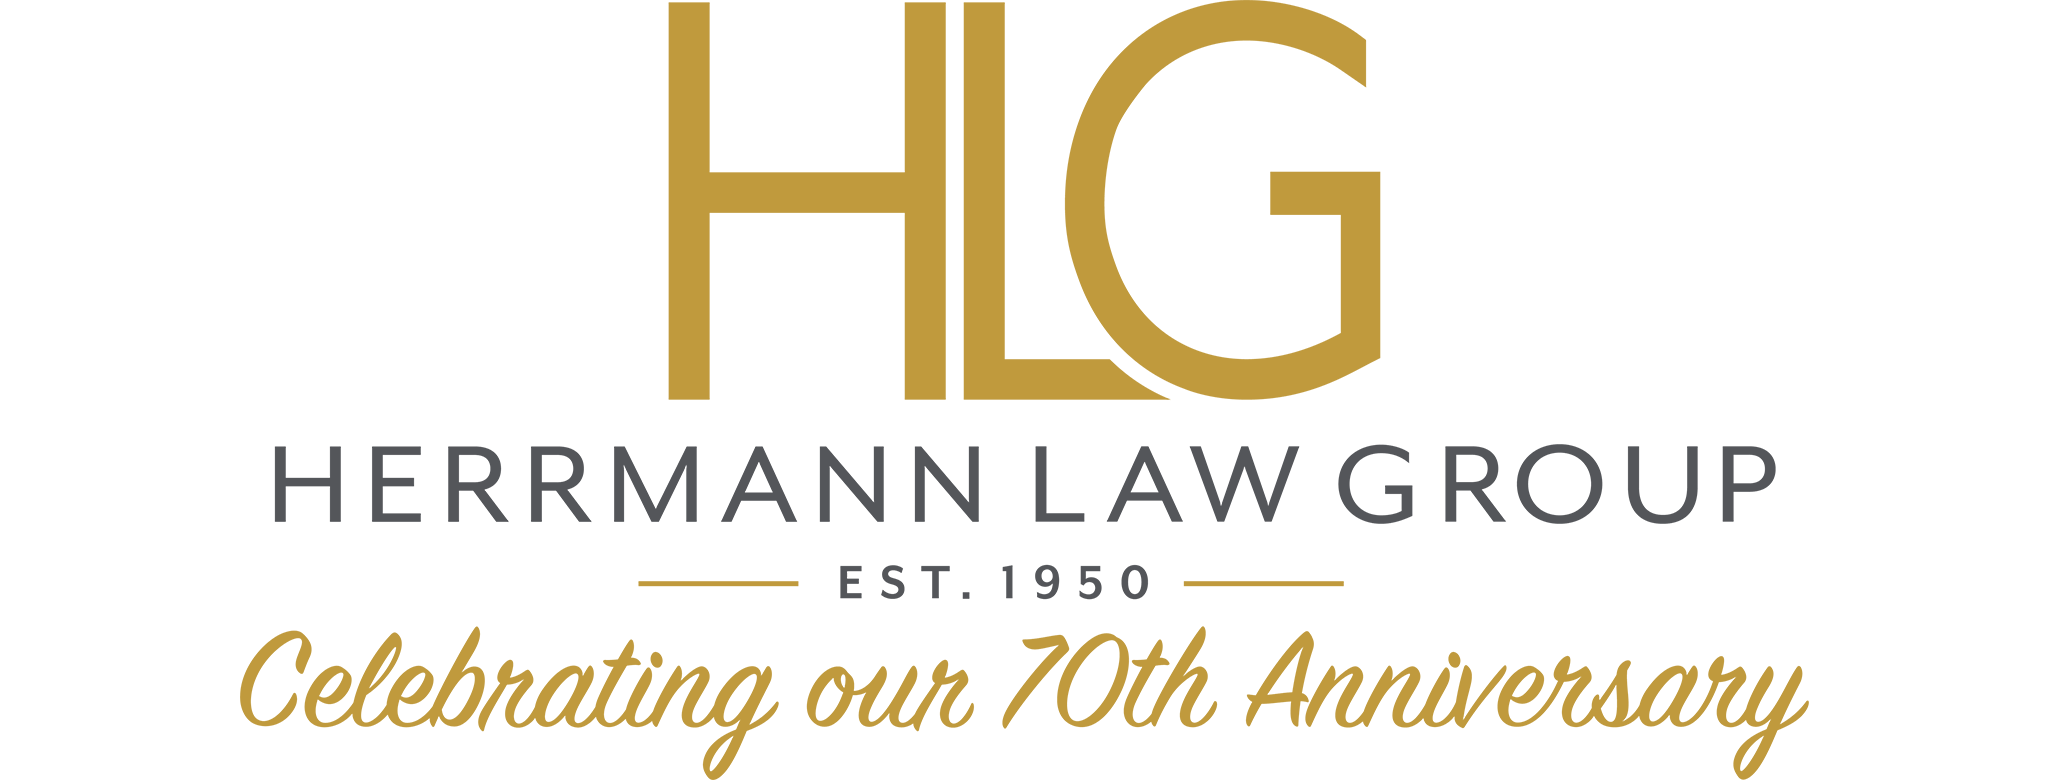 Herrmann Law Group